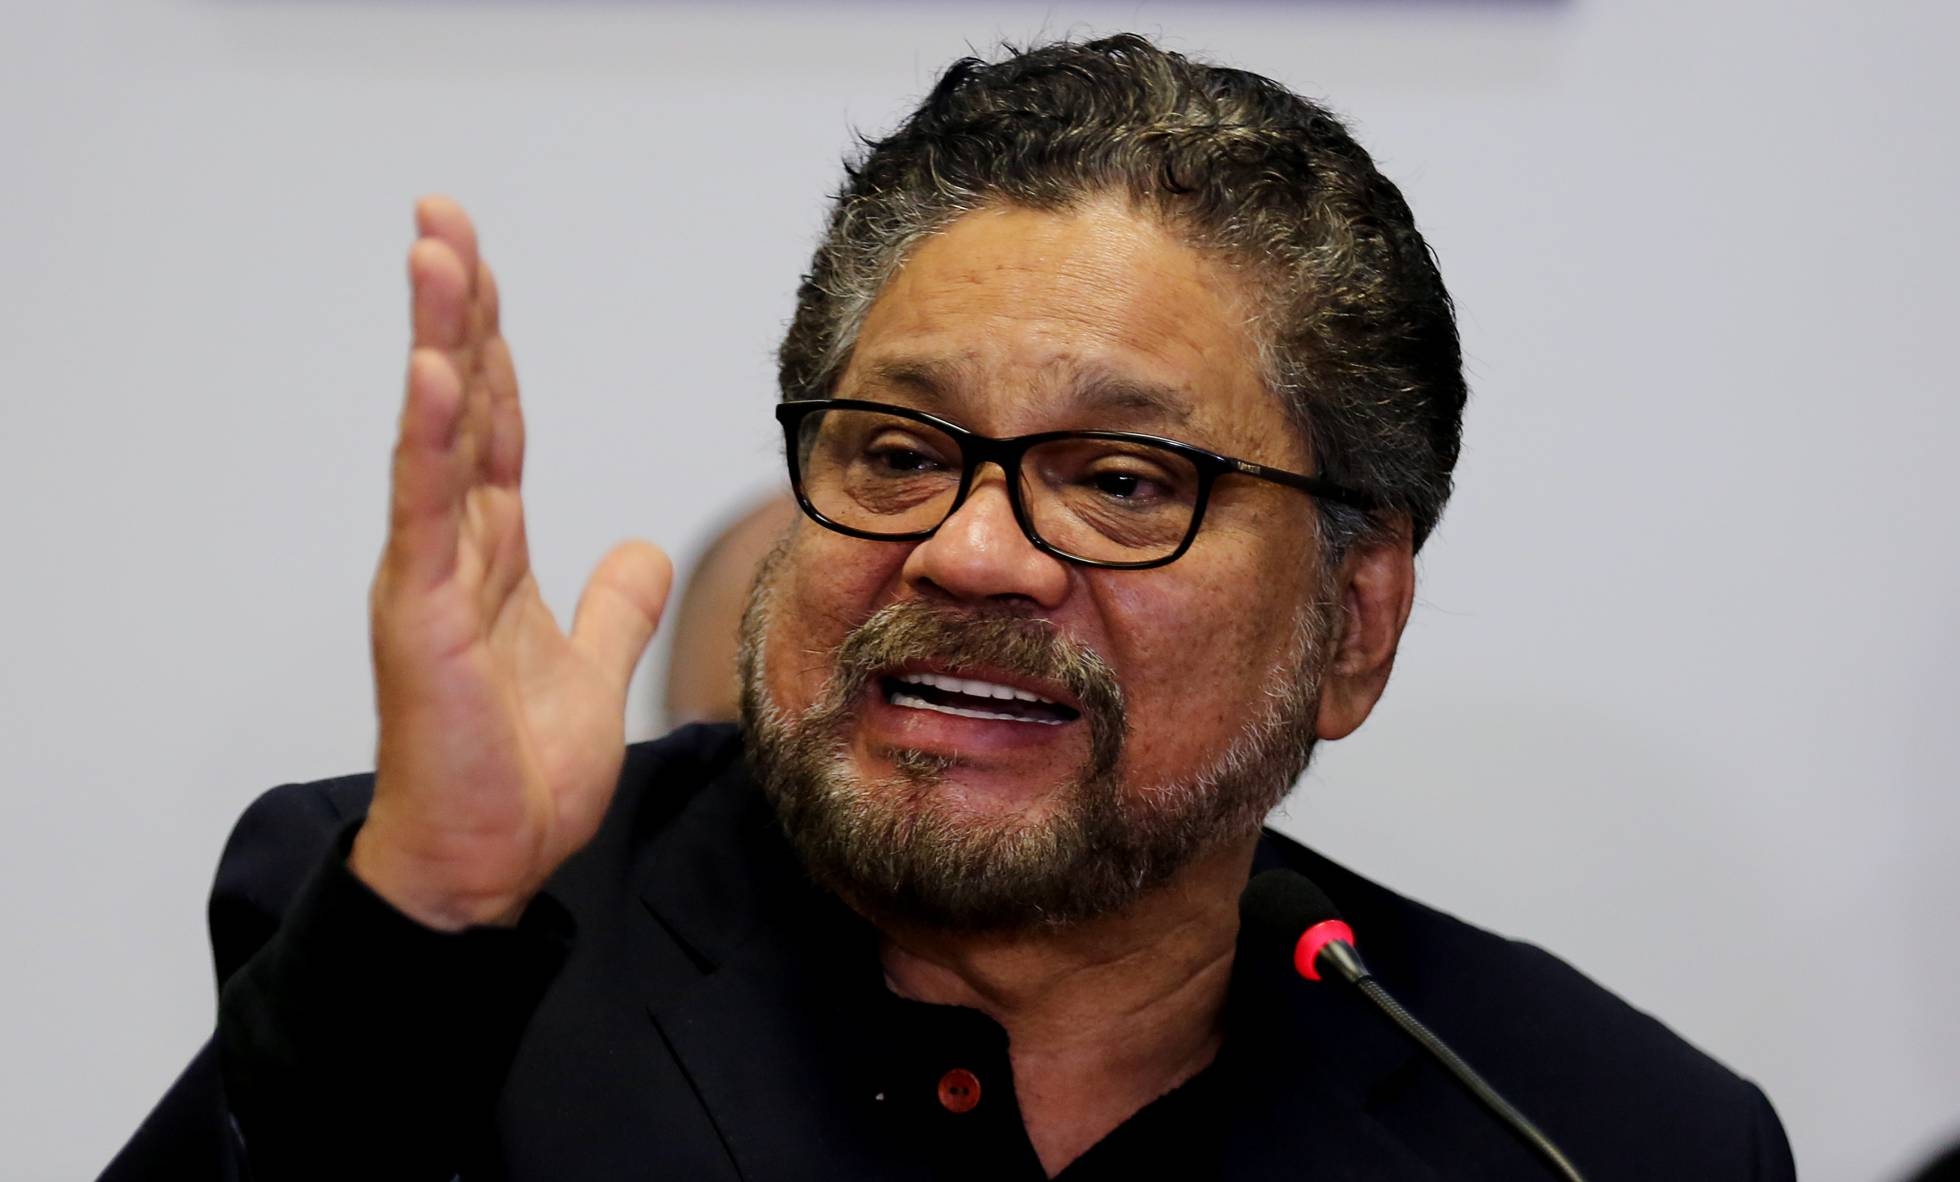 El exjefe negociador de las FARC: “Fue un grave error haber entregado las armas”